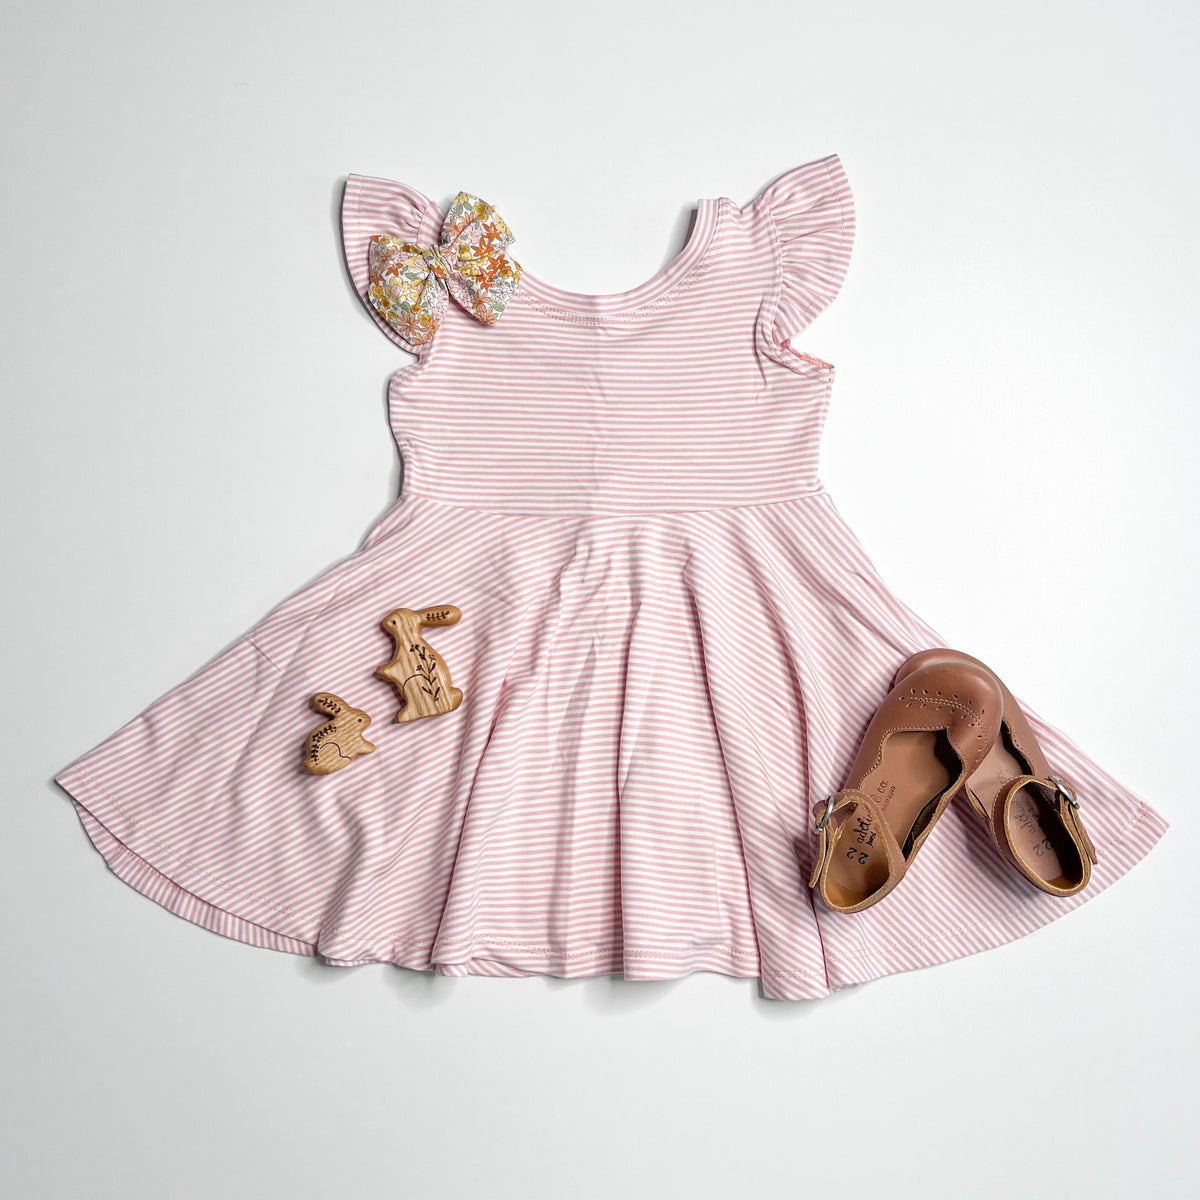 Elle Twirl Dress [Flutter Sleeve] in 'Sunset Pink Mini Stripe' - Ready To Ship